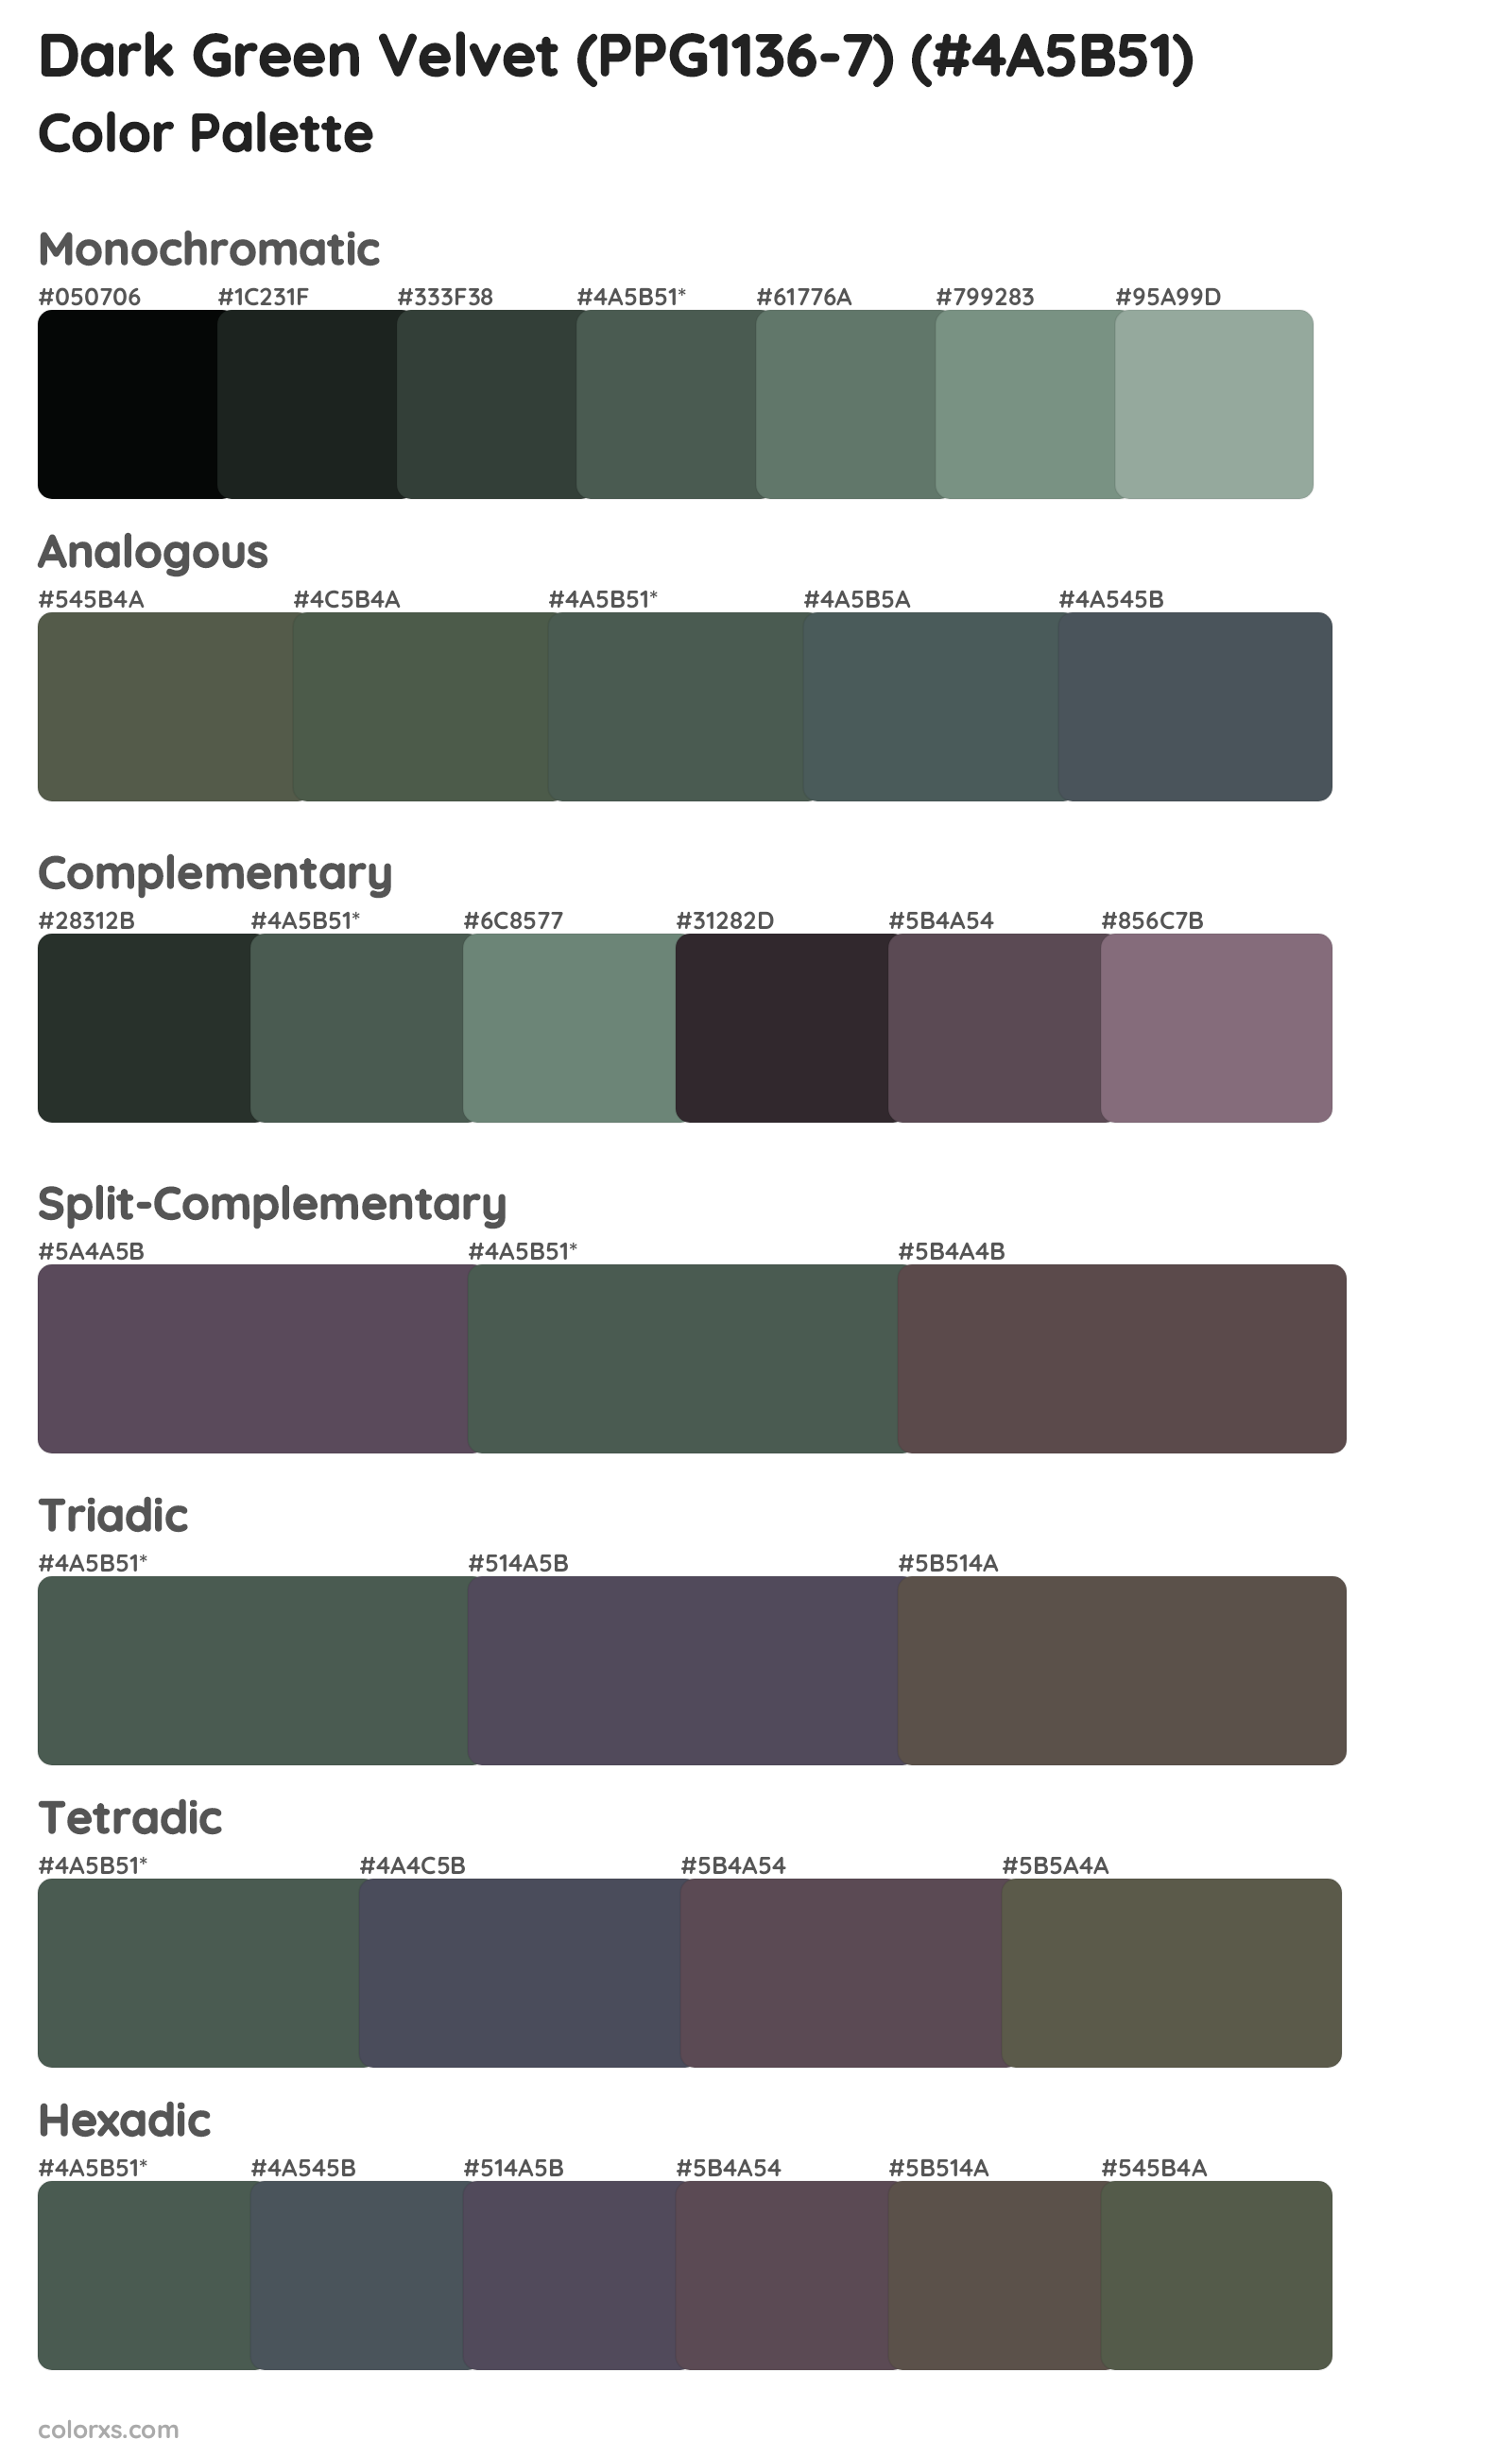 Dark Green Velvet (PPG1136-7) Color Scheme Palettes